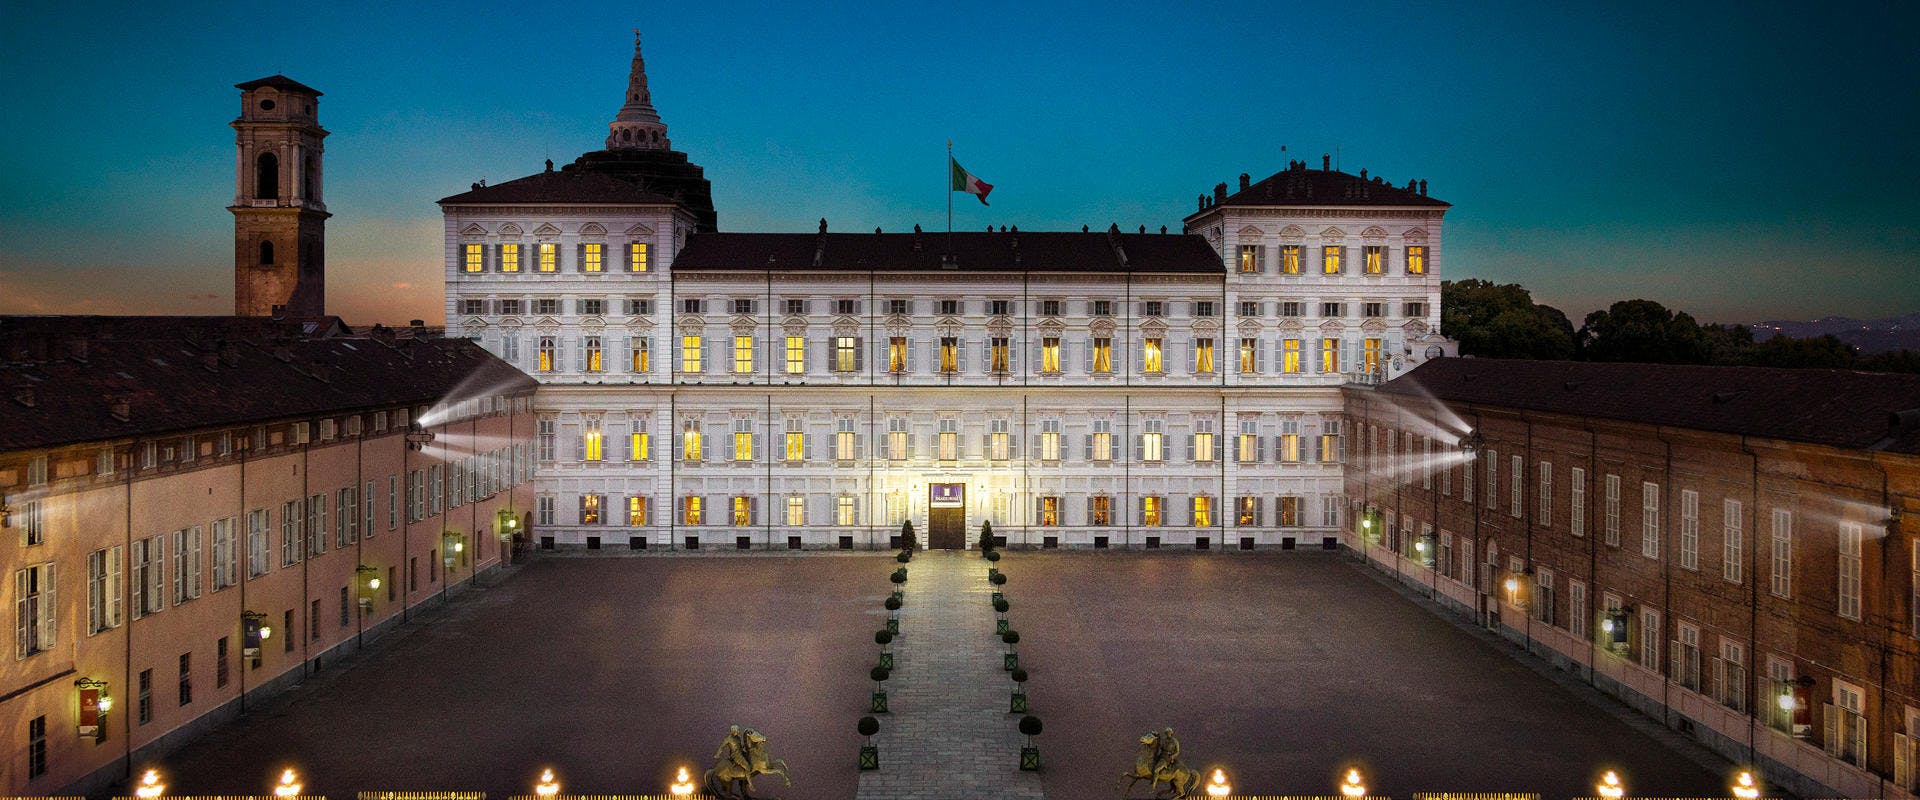 Führung durch den Königspalast von Turin mit Einlass ohne Anstehen